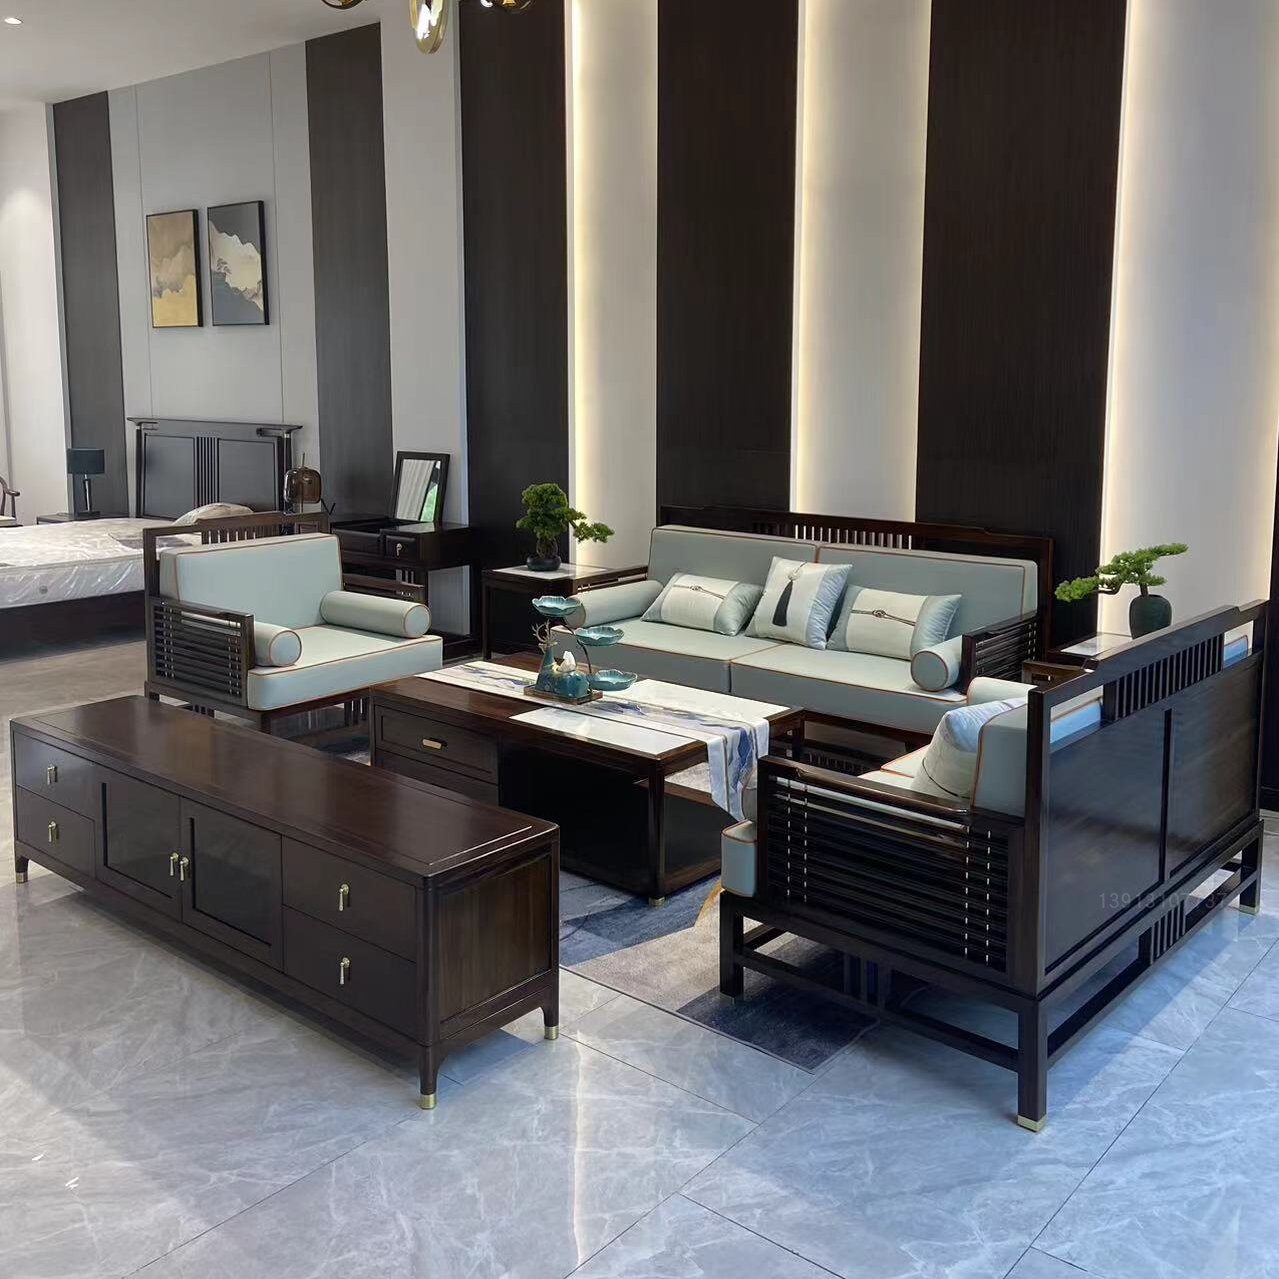 新中式乌金木沙发现代简约沙发别墅客厅家具组合榫卯实木沙发